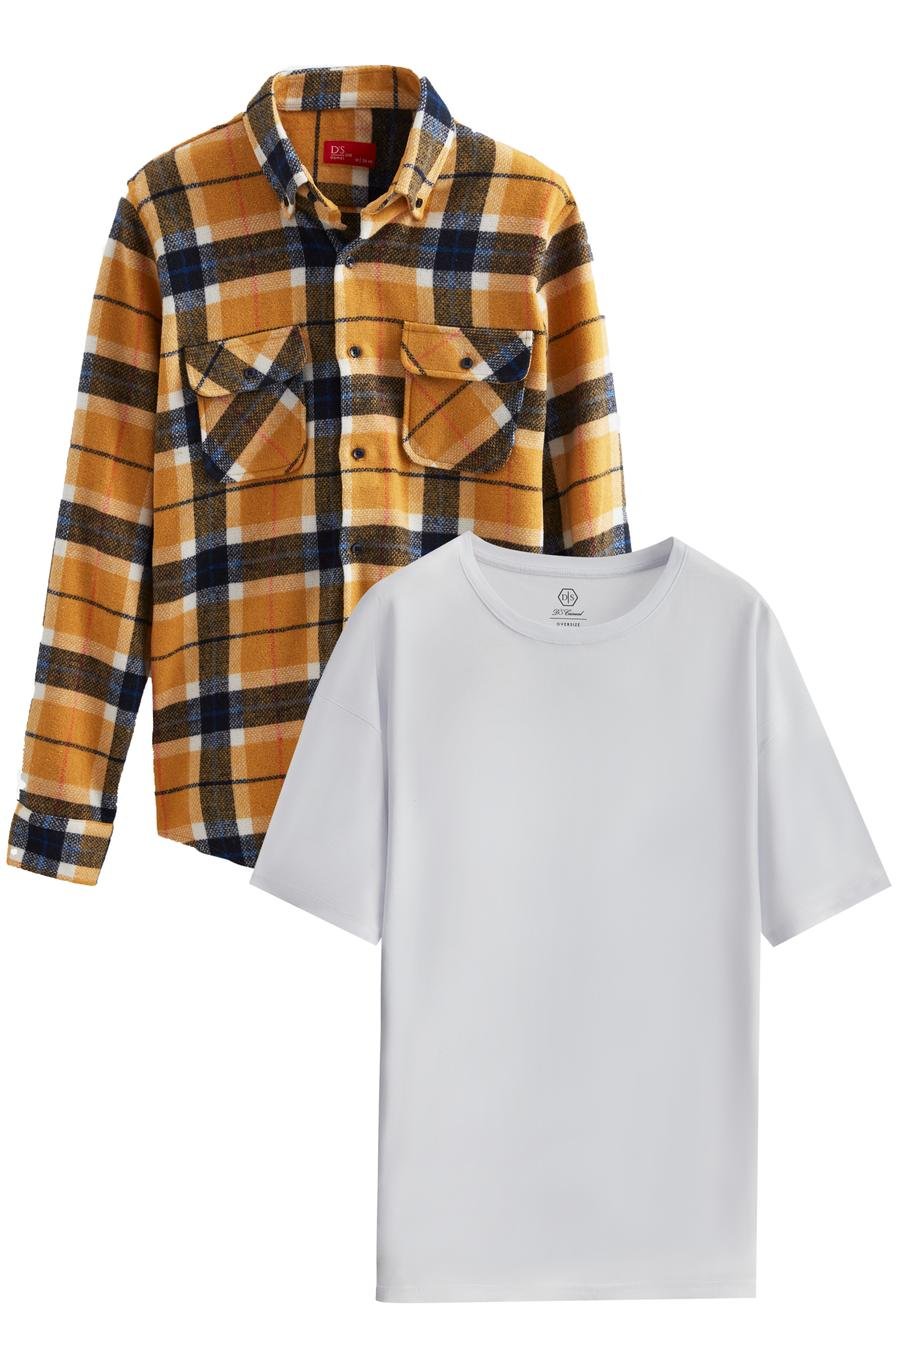 Ds Damat Regular Fit Hardal Tshirt-Oduncu Gömlek - 8683578025860 | D'S Damat